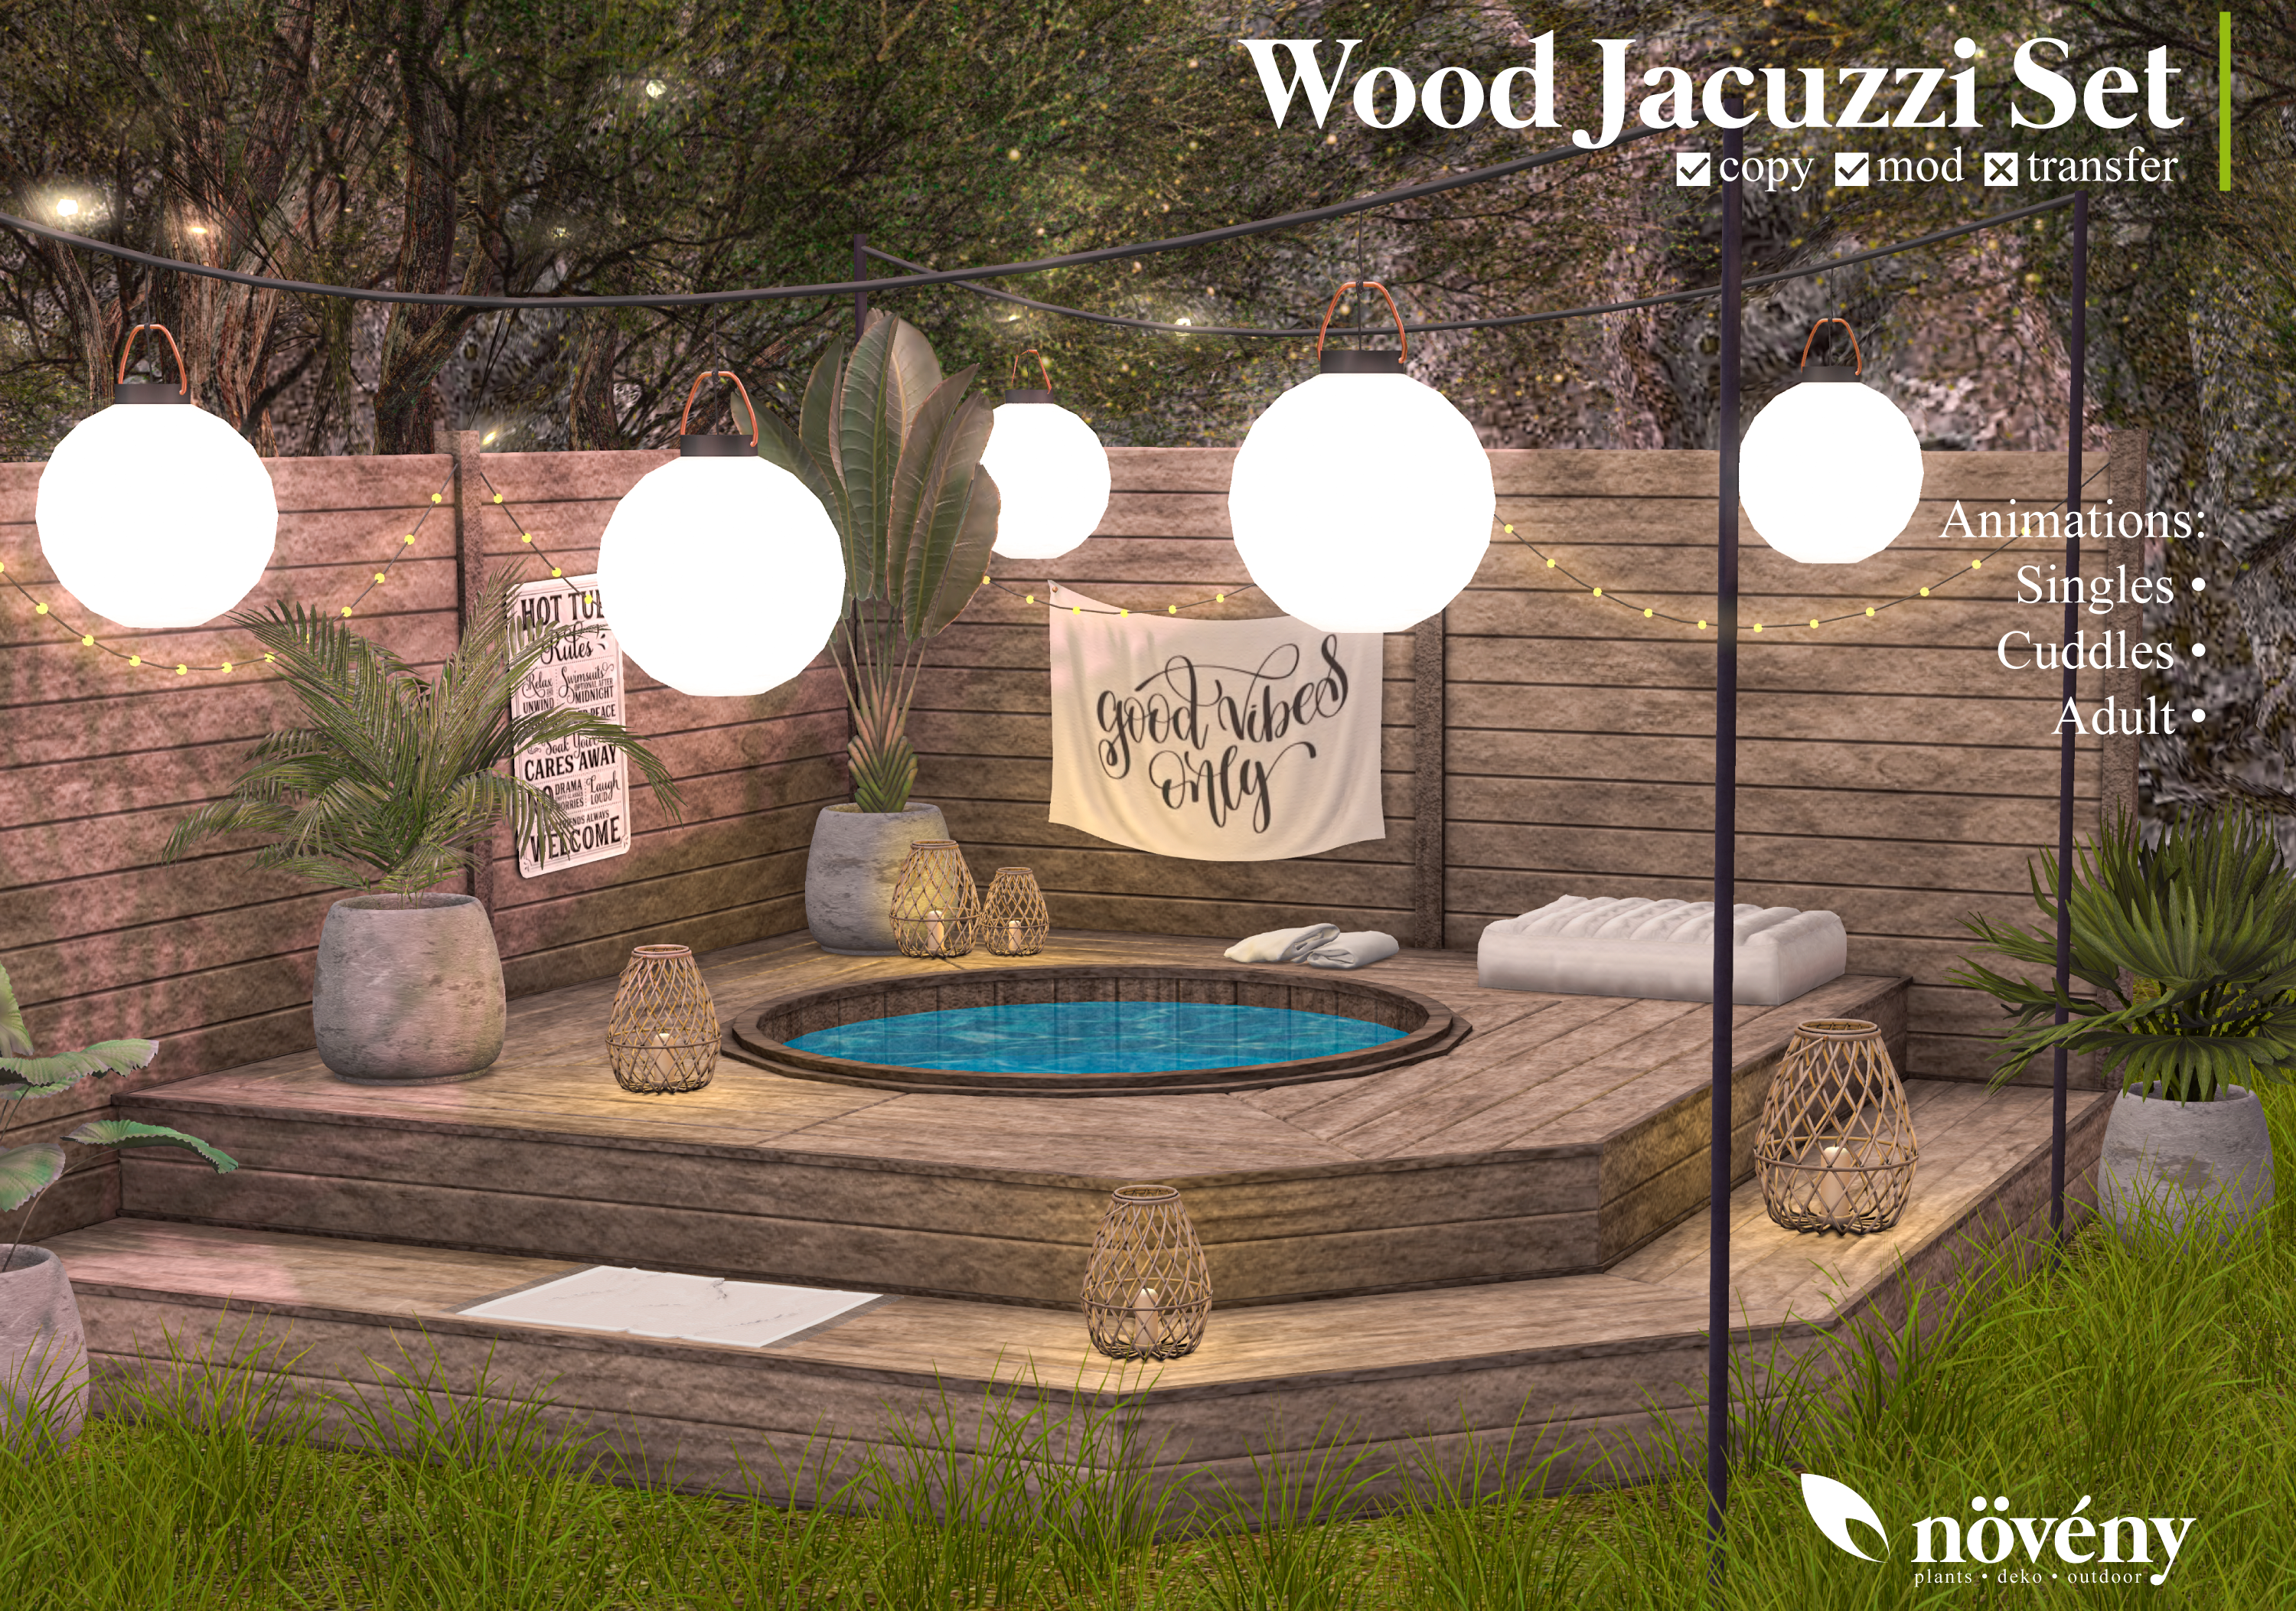 Noveny – Wood Jacuzzi Set